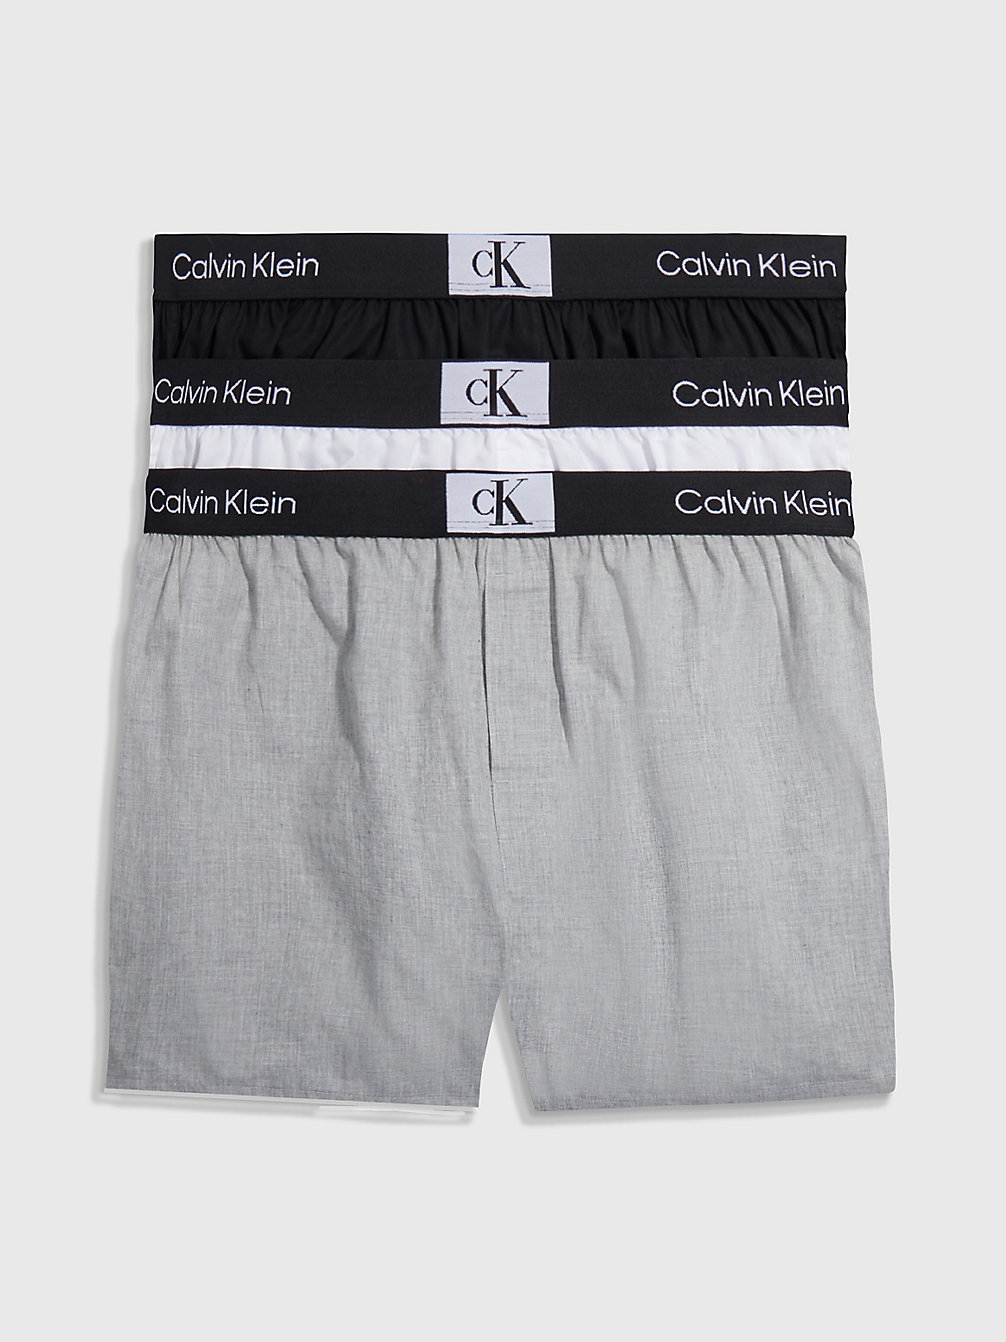 BLACK/WHITE/GREY HEATHER 3er-Pack Slim Fit Boxershorts - Ck96 undefined Herren Calvin Klein